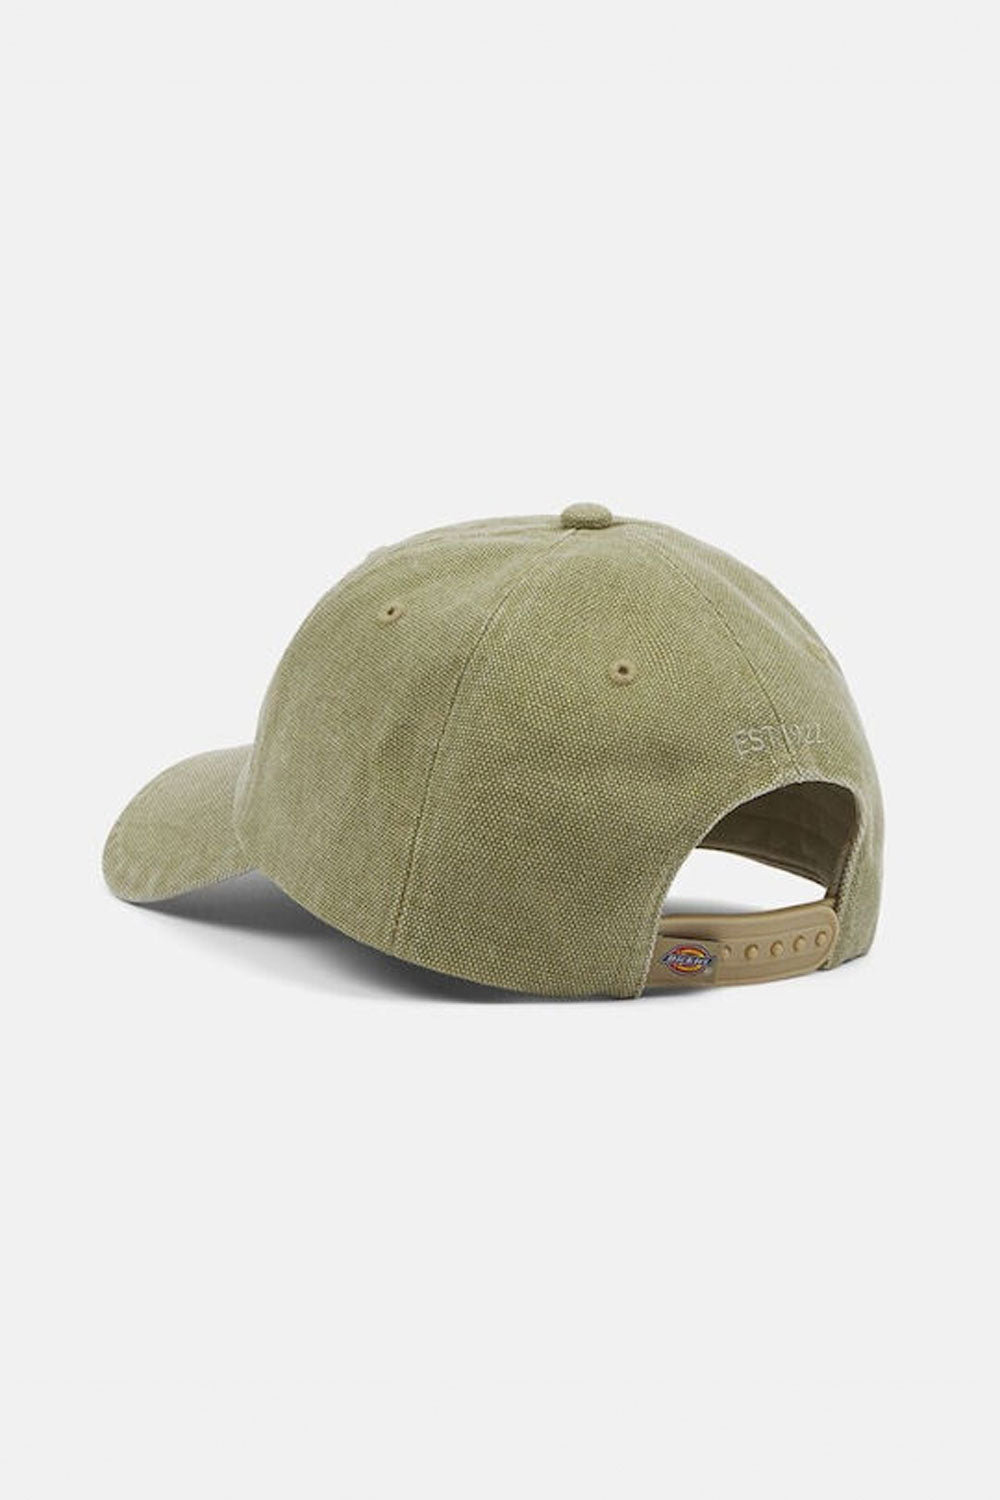 דיקיז כובע מצחיה Hardwick בצבע חום ירקרק-Dickies-One size-נאקו